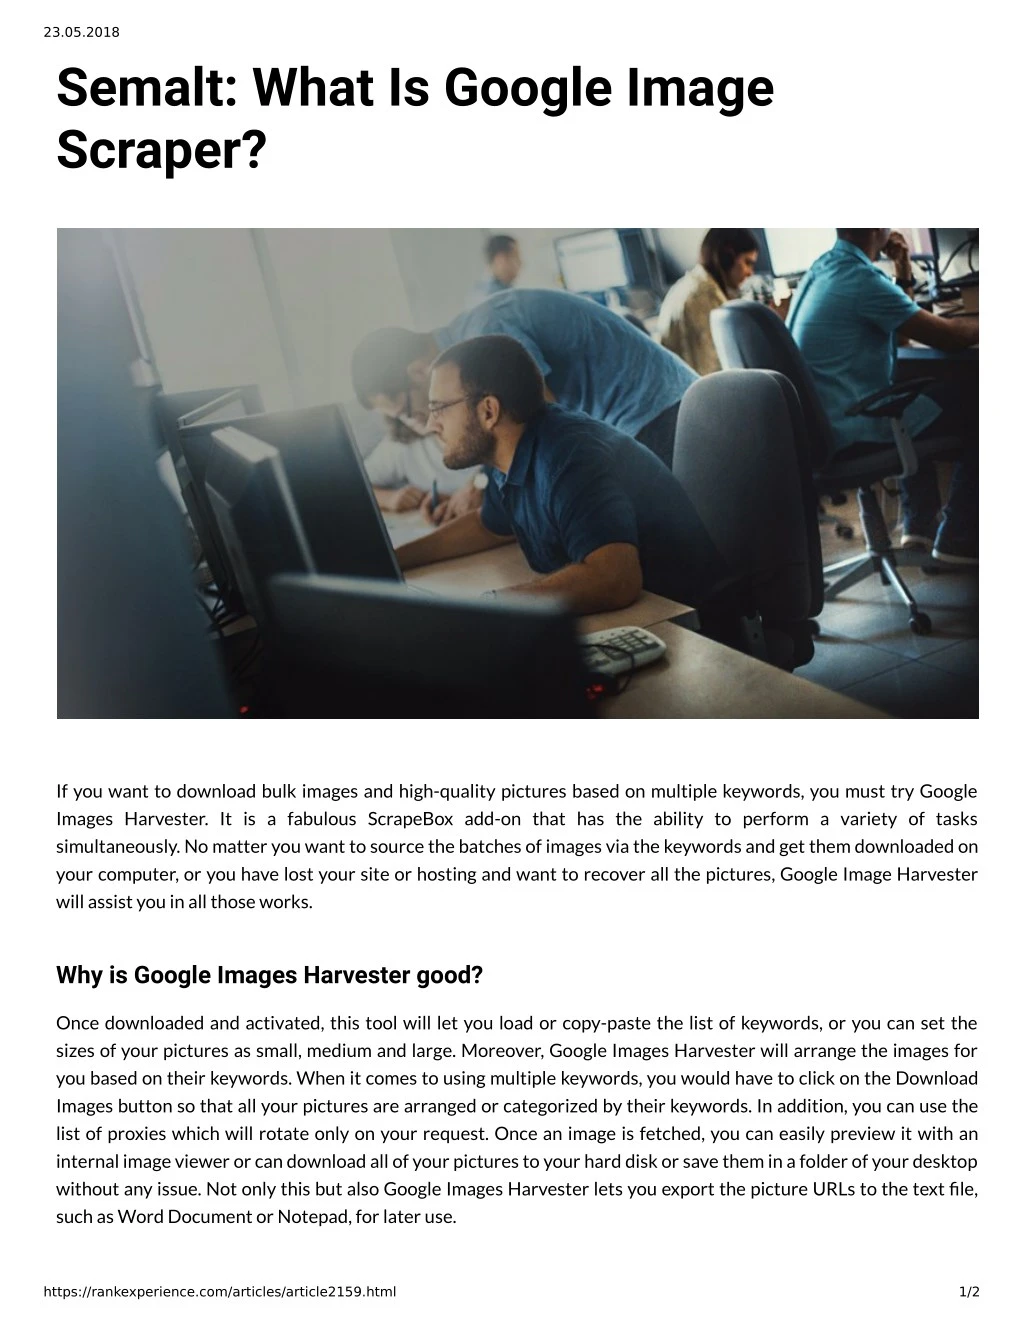 23 05 2018 semalt what is google image scraper